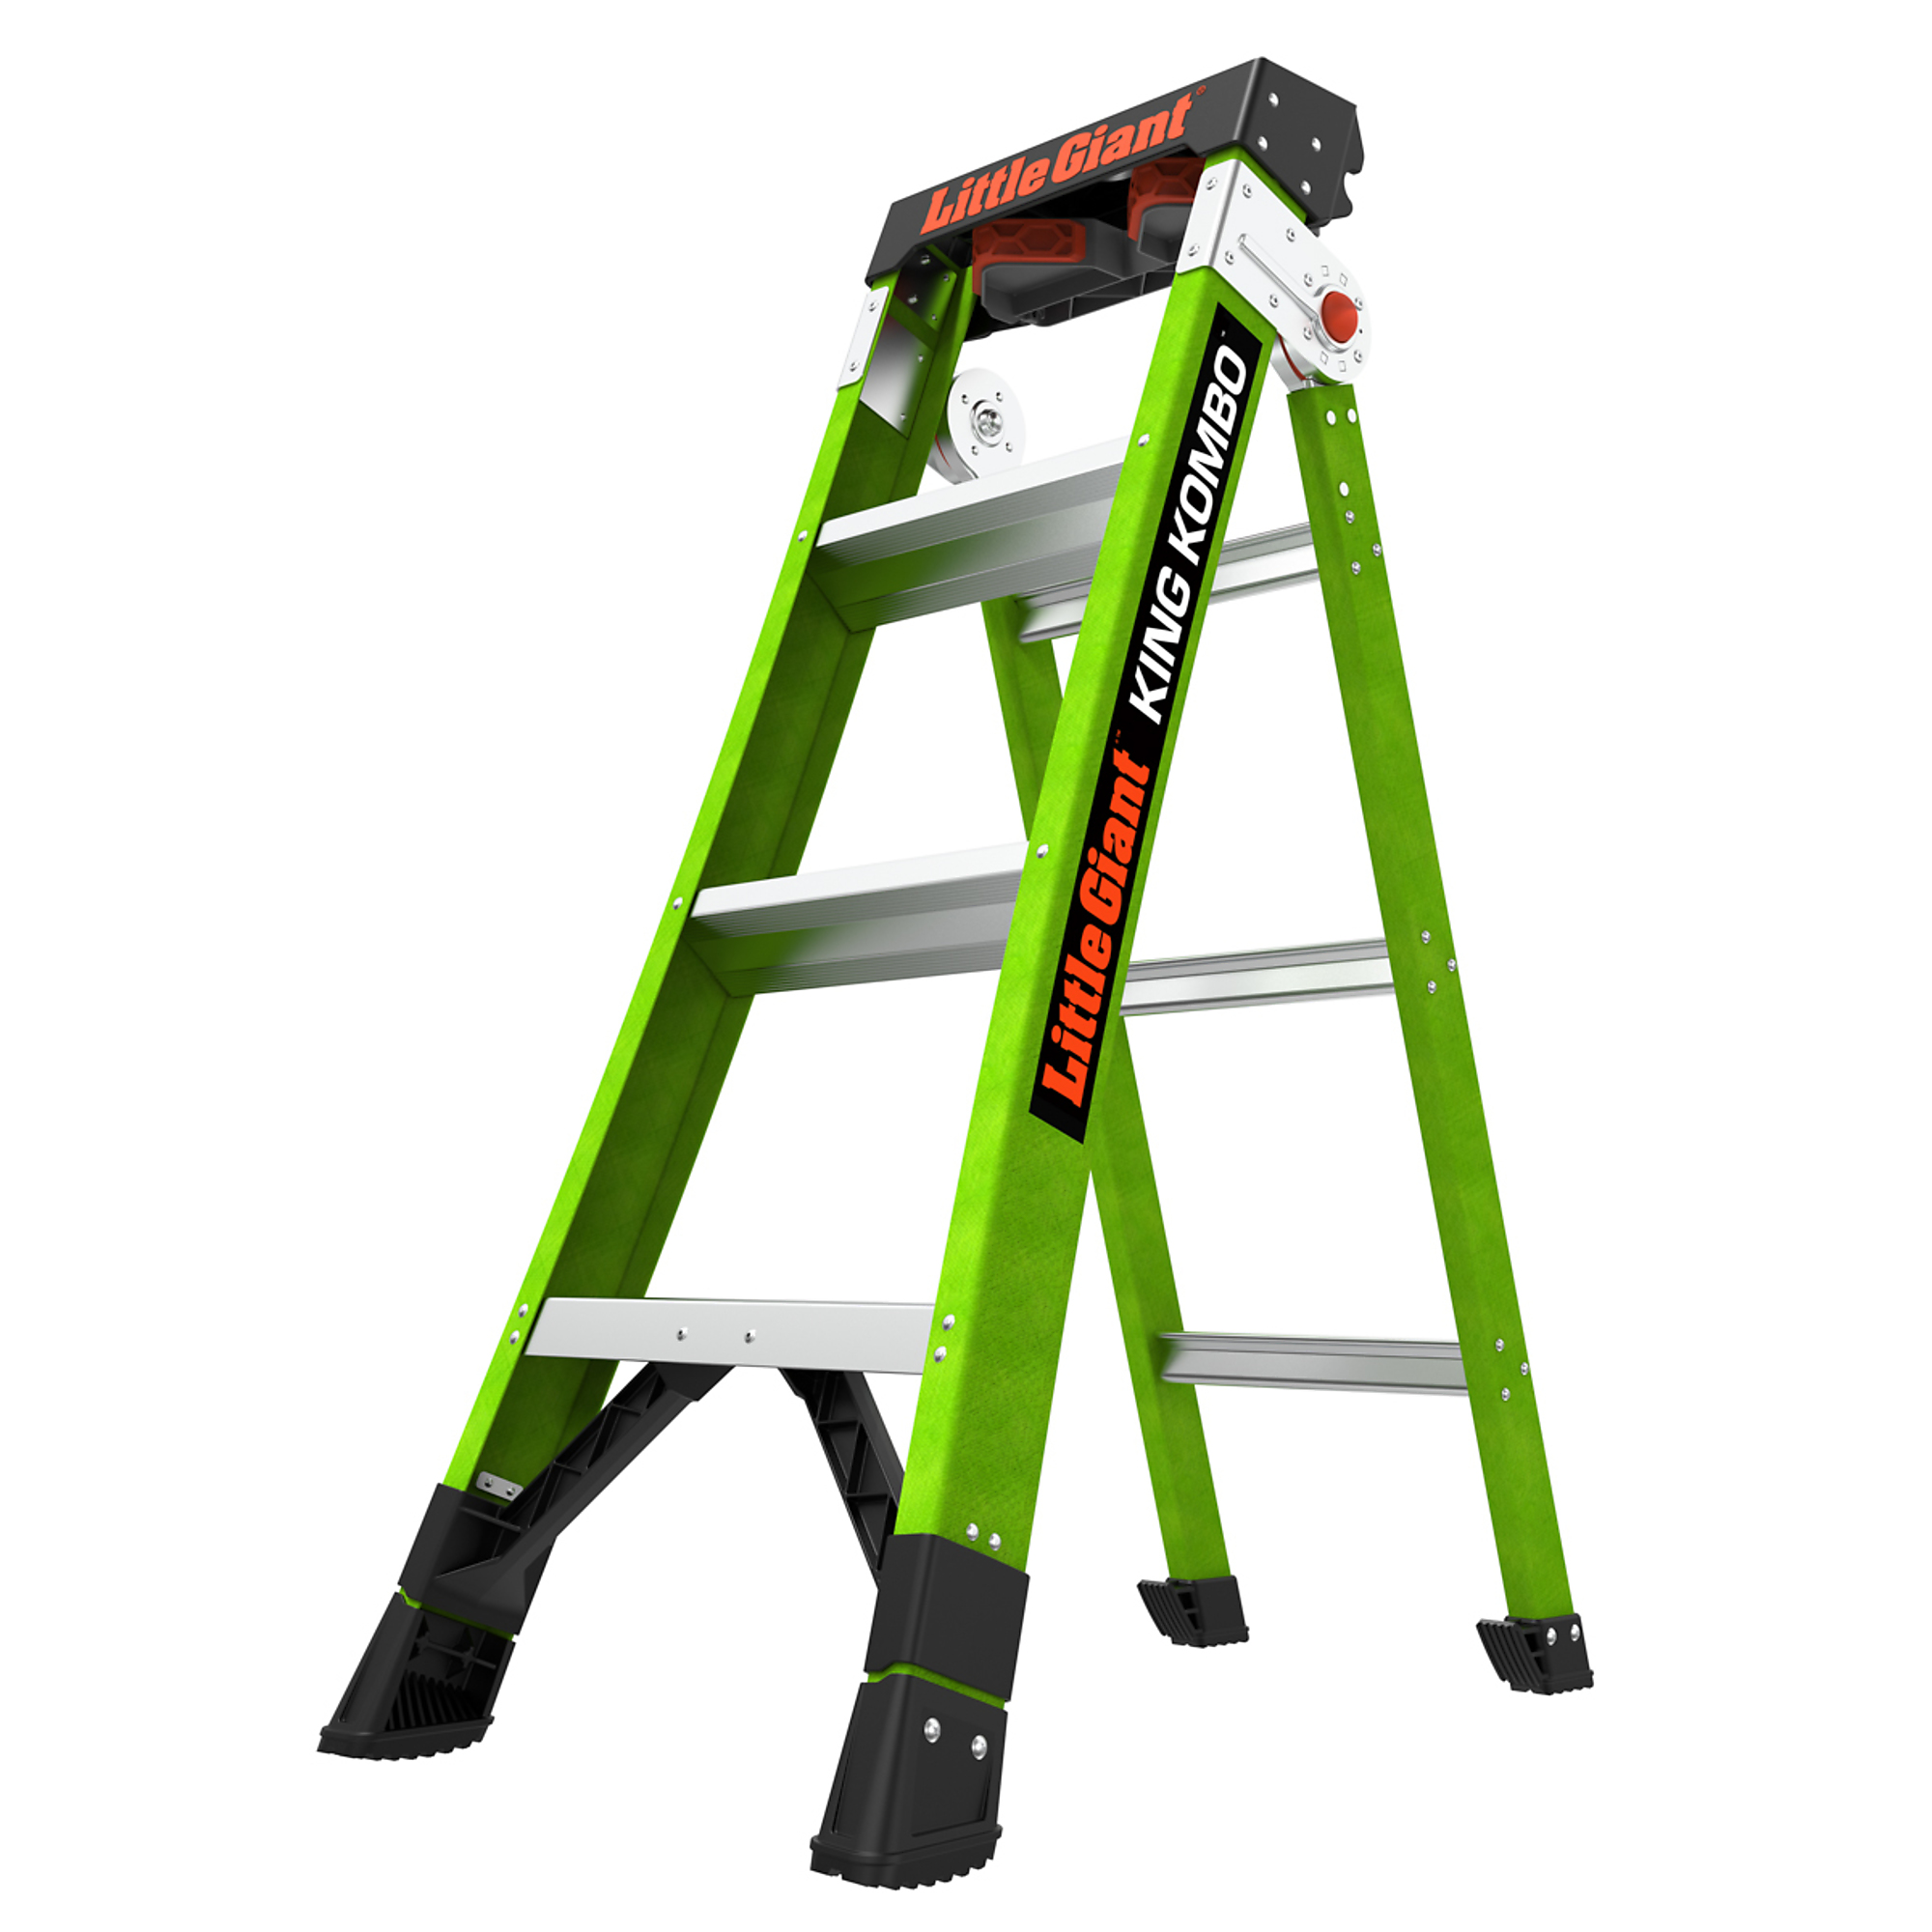 KING KOMBO Profes 4ft. 375lb Fiberglass Combo Ladder, Height 4 ft, Capacity 375 lb, Material Fiberglass, Model - Little Giant Ladder 13470-001